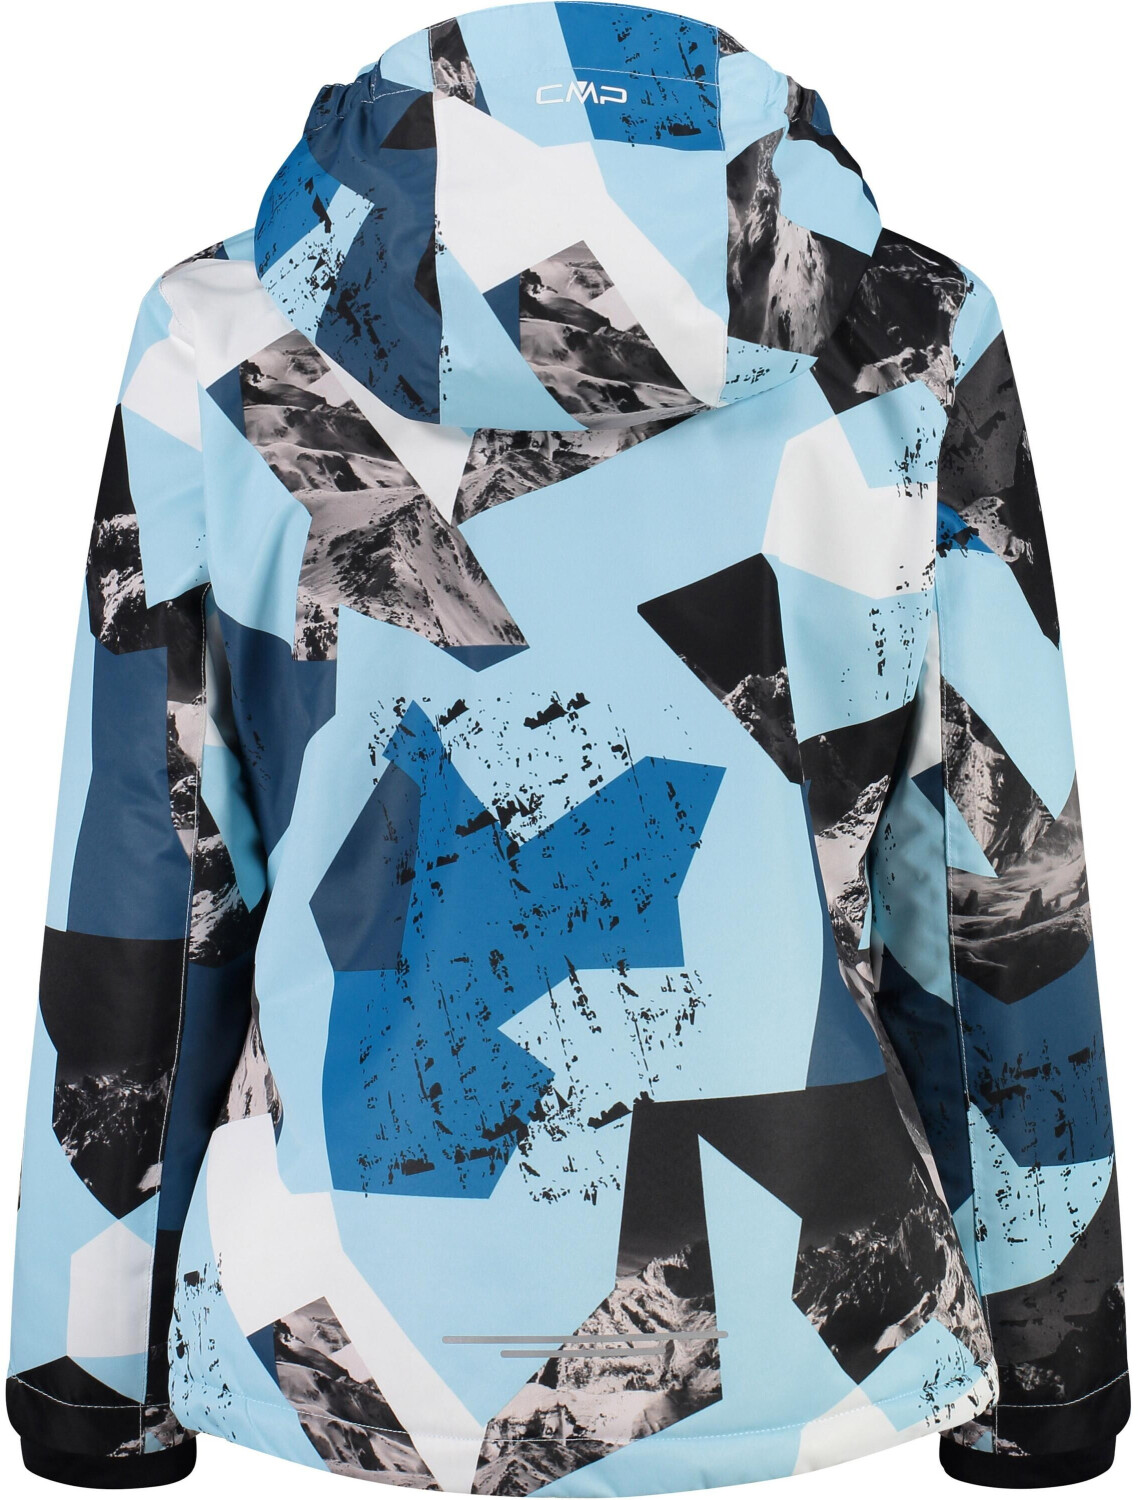 CMP Girl Snaps Jacket (39W2085) anice-maiolica-giada a € 52,46 (oggi) |  Migliori prezzi e offerte su idealo